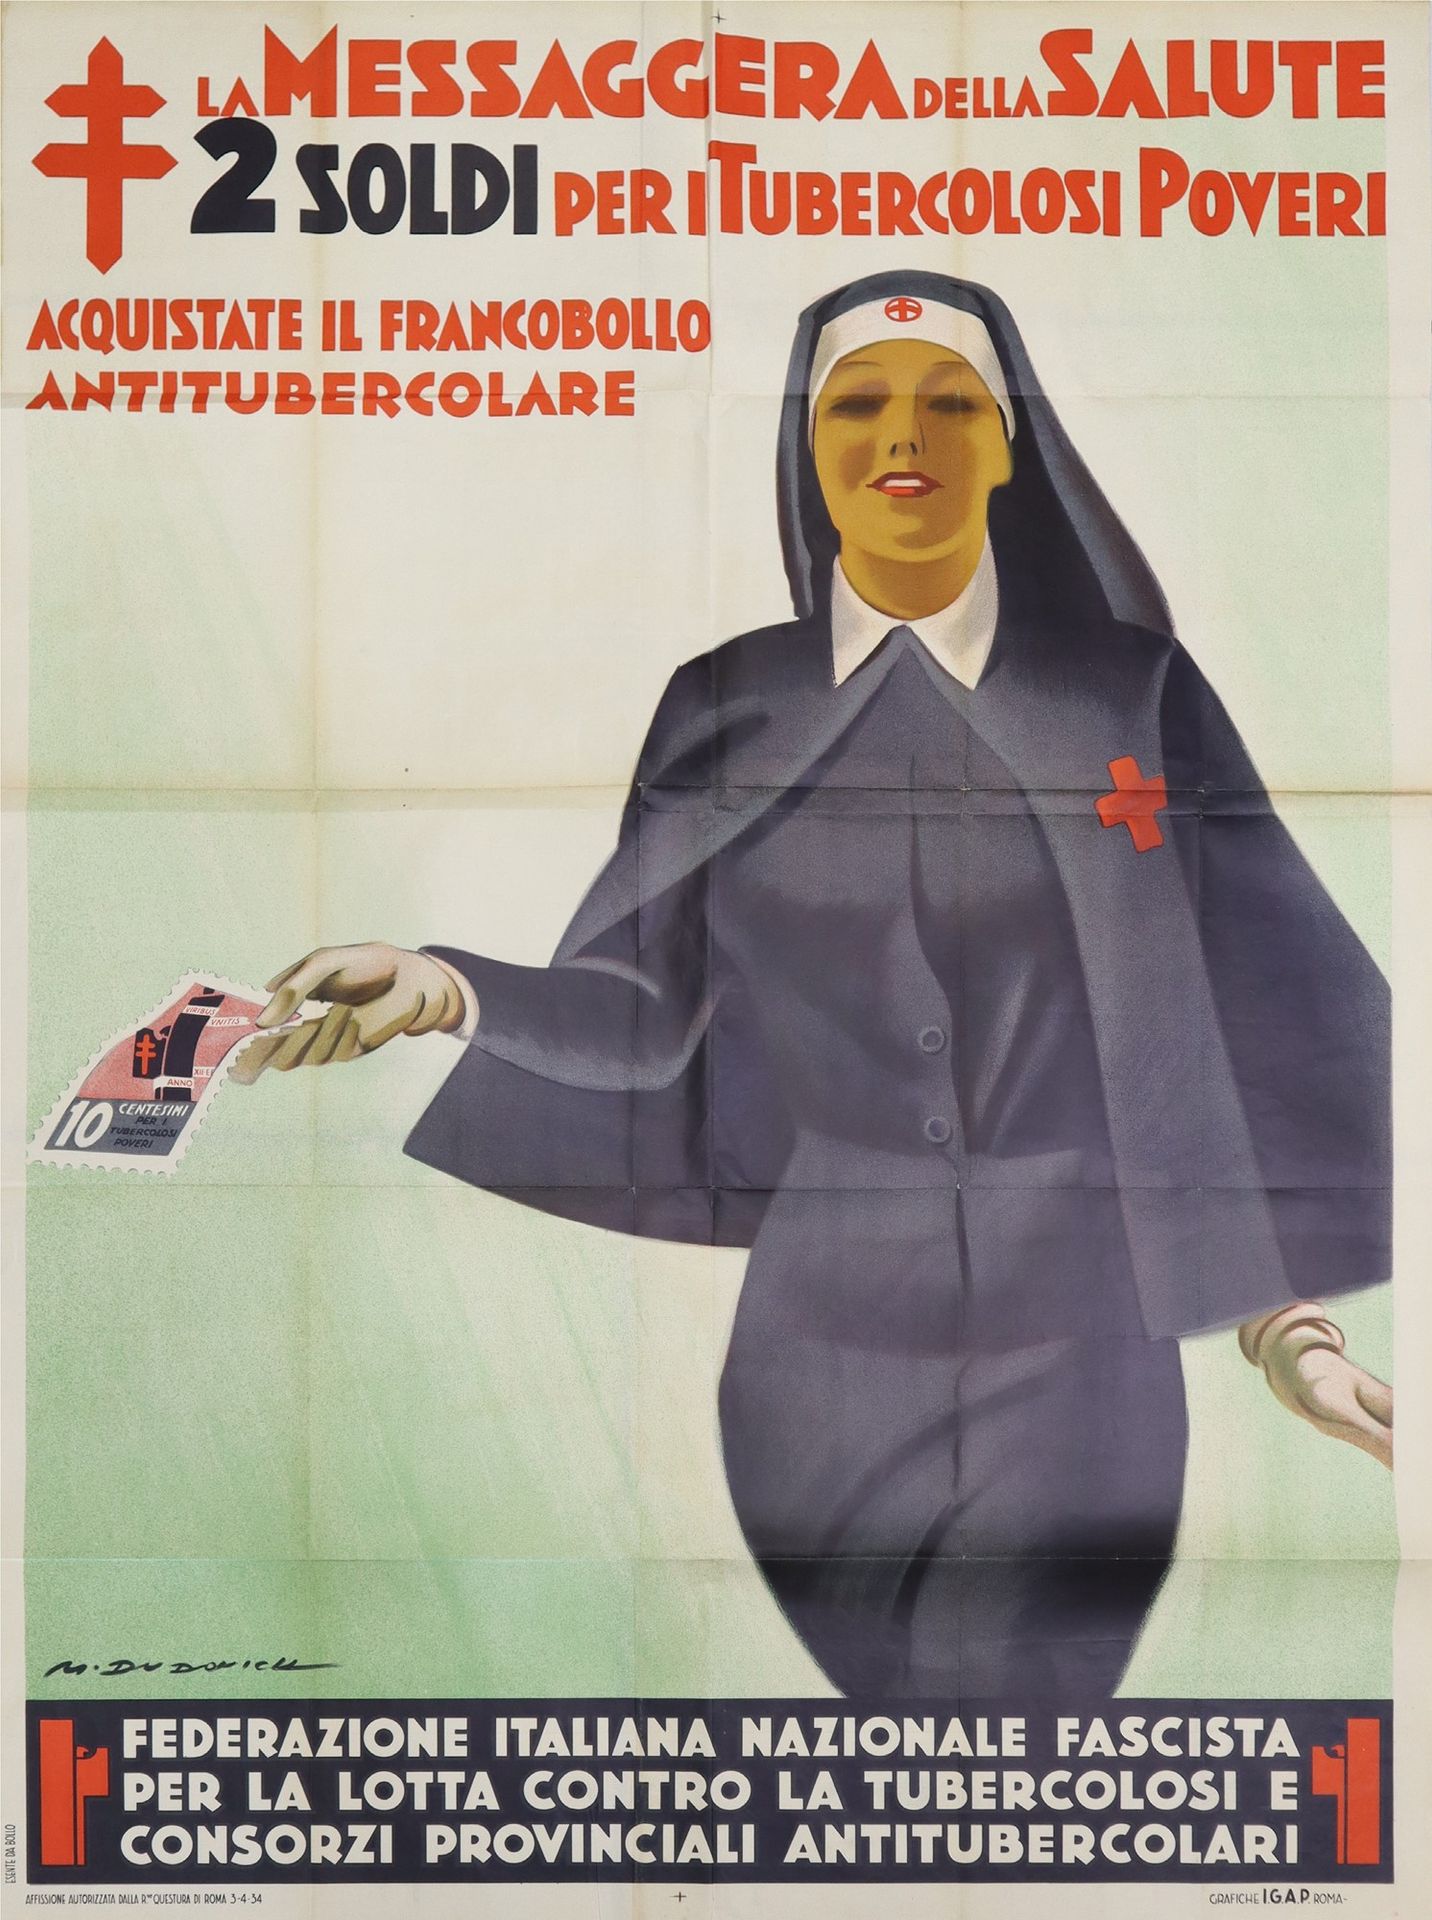 MARCELLO DUDOVICH 宣传宣言 "健康的使者"，1934年 h140 cm x 100 cm 左下角有签名，I.G.A.P. 罗马